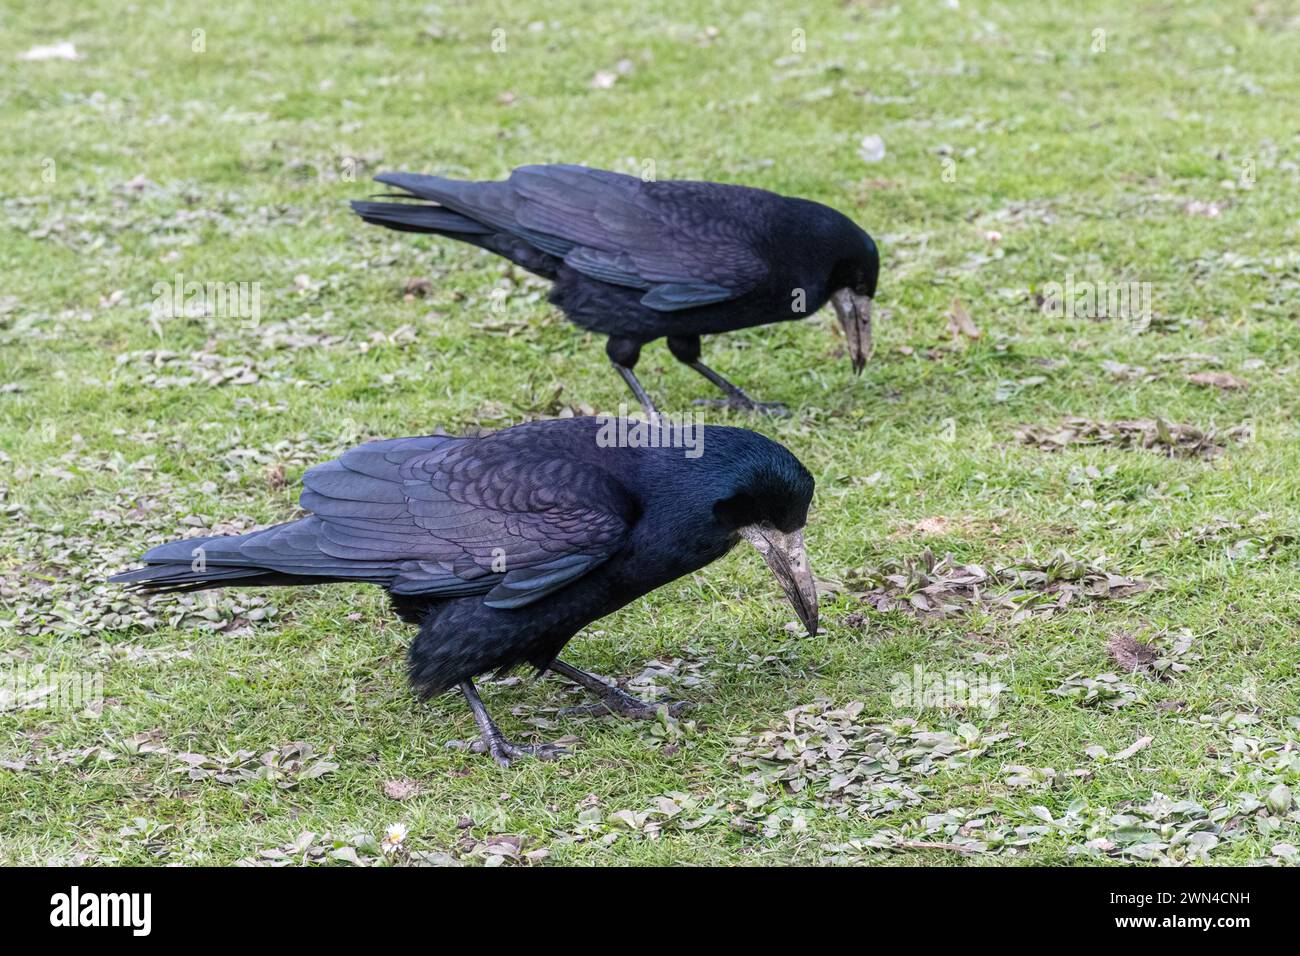 Deux rochers (Corvus frugilegus), grands oiseaux noirs de la famille des Corvidés ou Corvidés qui se nourrissent au sol, Angleterre, Royaume-Uni Banque D'Images